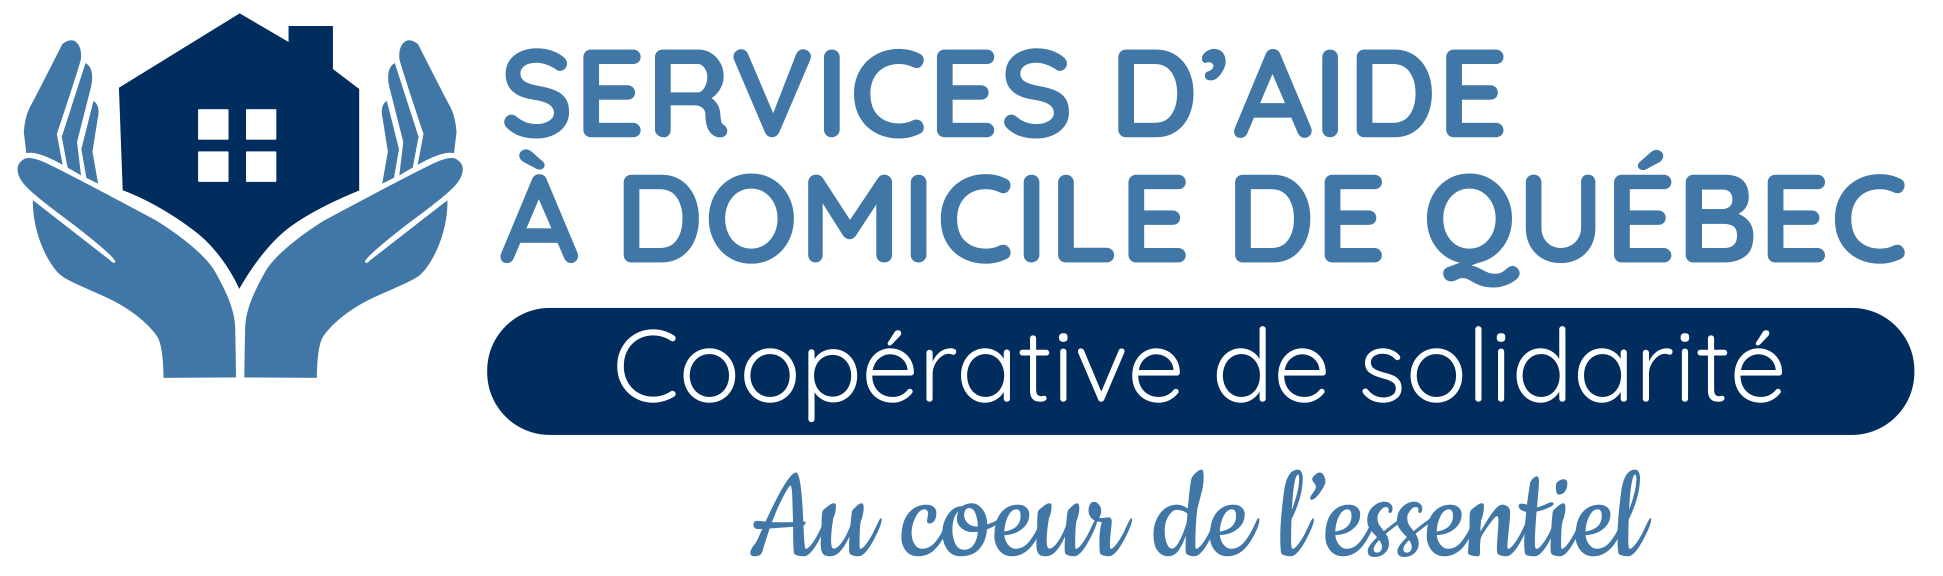 Services d'aide à domicile de Québec